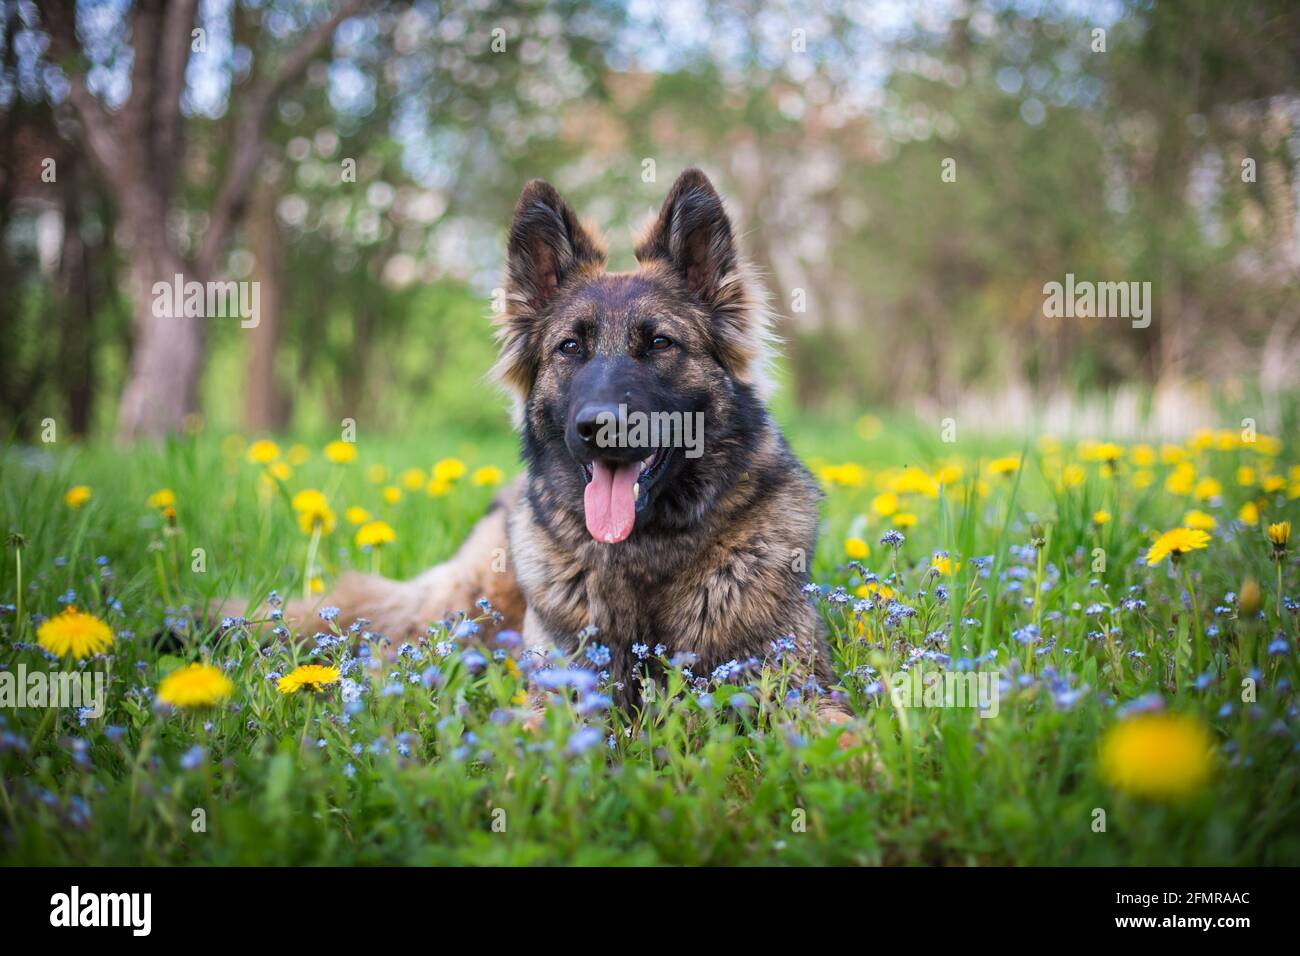 German Shepherd Dog (Alsatian) in the flowers Stock Photo